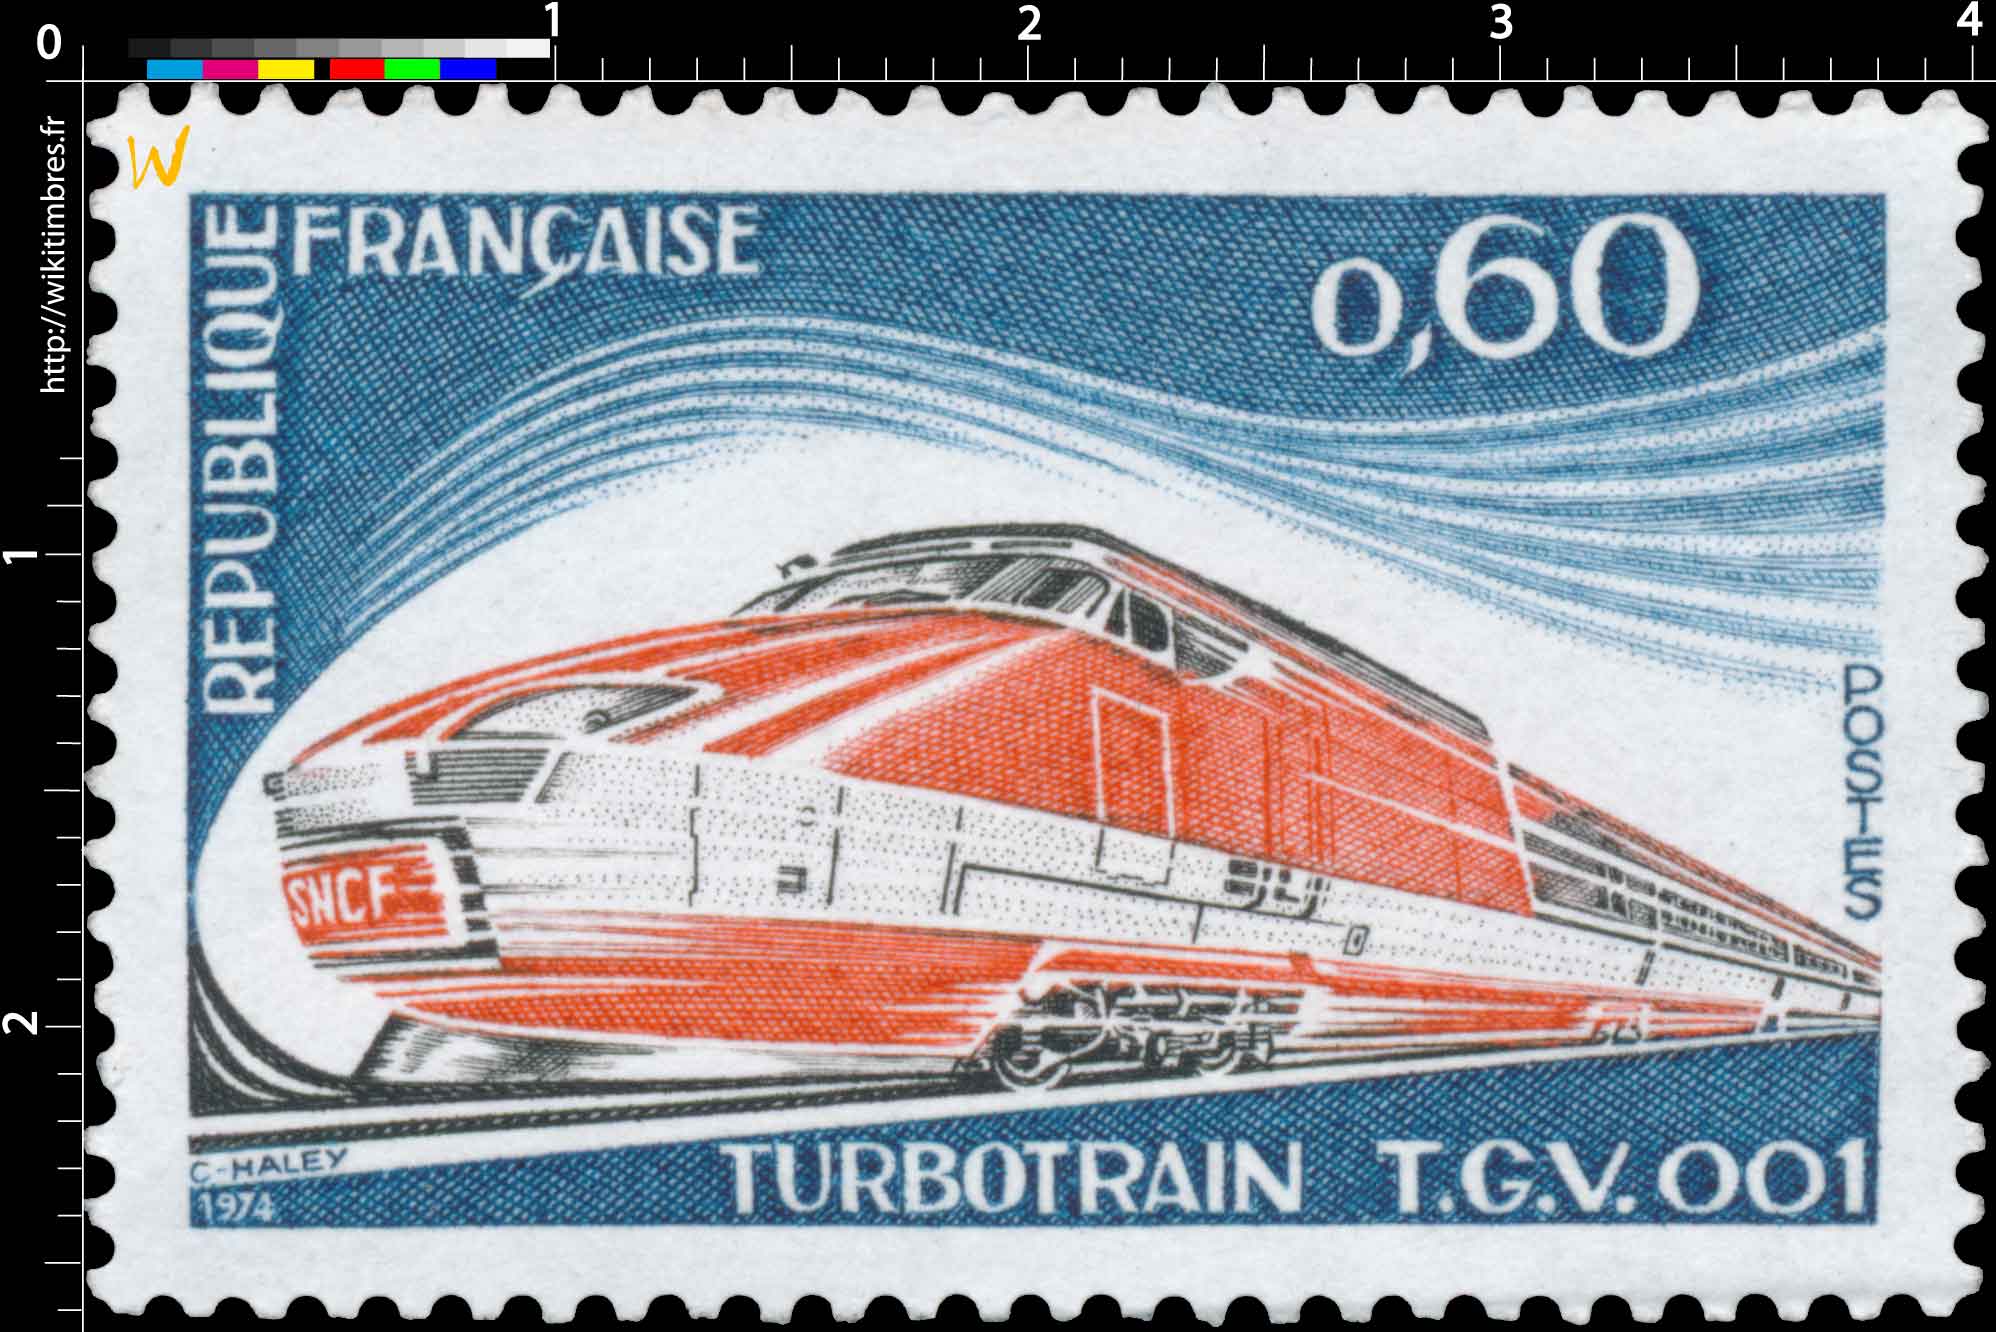 1974 TURBOTRAIN T.G.V. 001